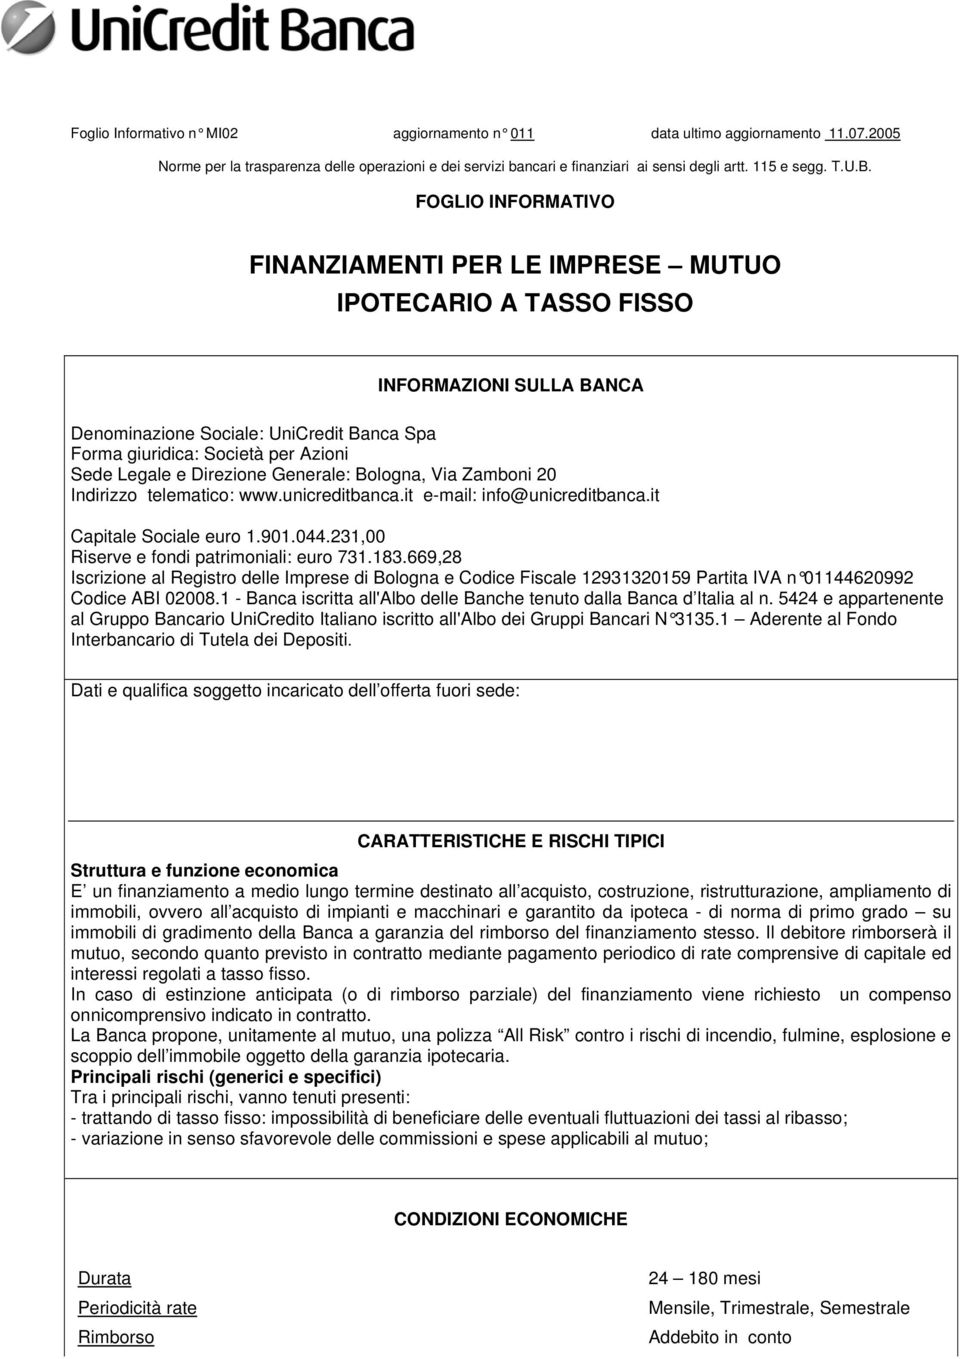 Direzione Generale: Bologna, Via Zamboni 20 Indirizzo telematico: www.unicreditbanca.it e-mail: info@unicreditbanca.it Capitale Sociale euro 1.901.044.231,00 Riserve e fondi patrimoniali: euro 731.